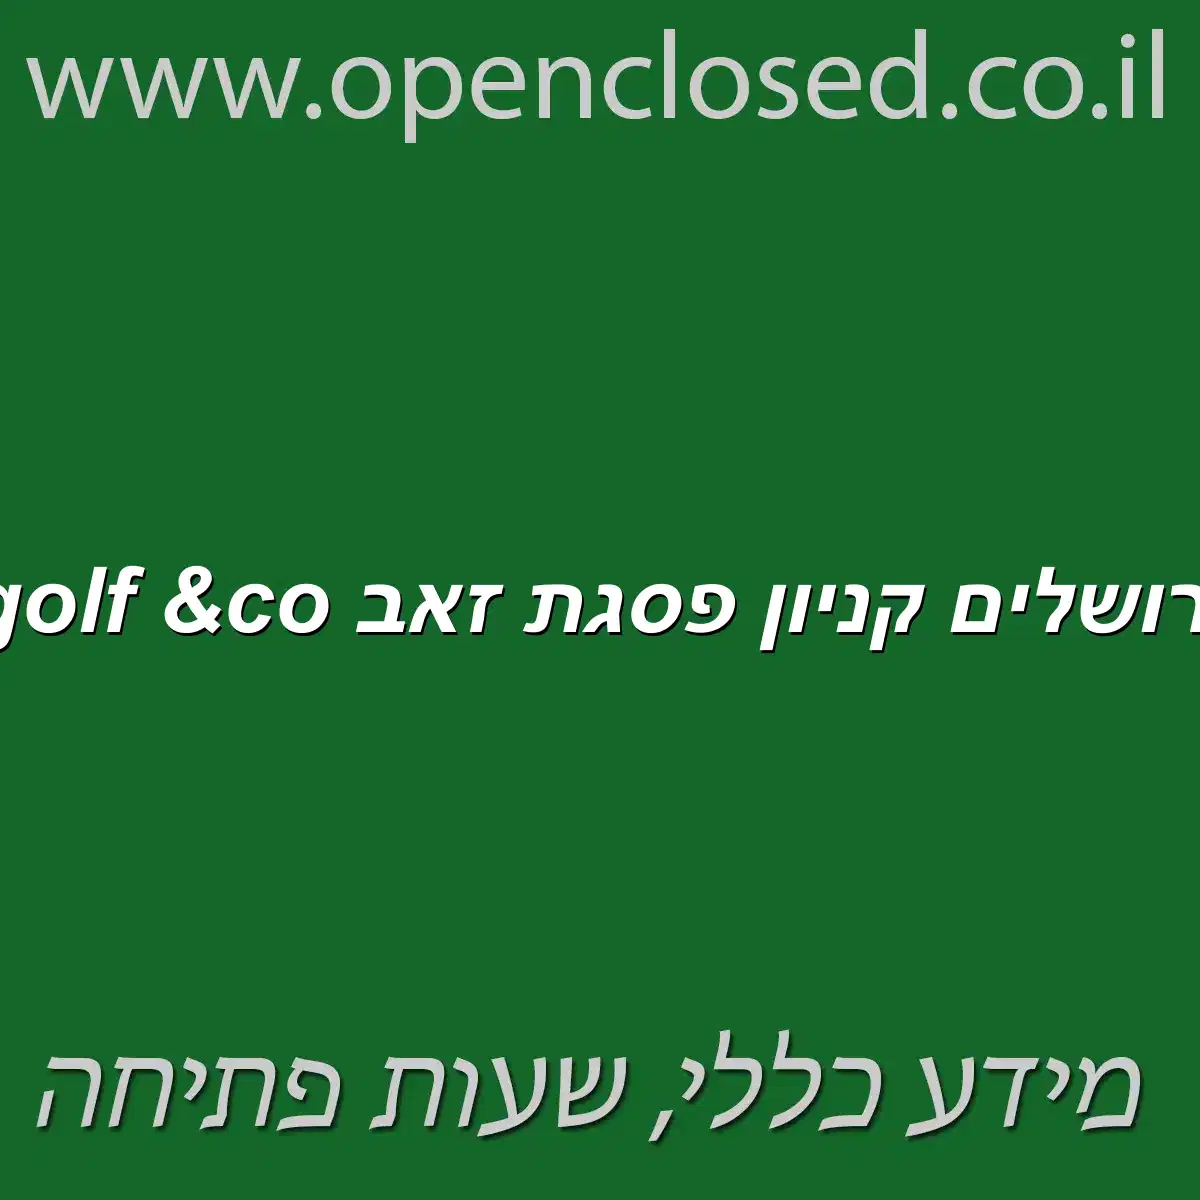 golf &co ירושלים קניון פסגת זאב